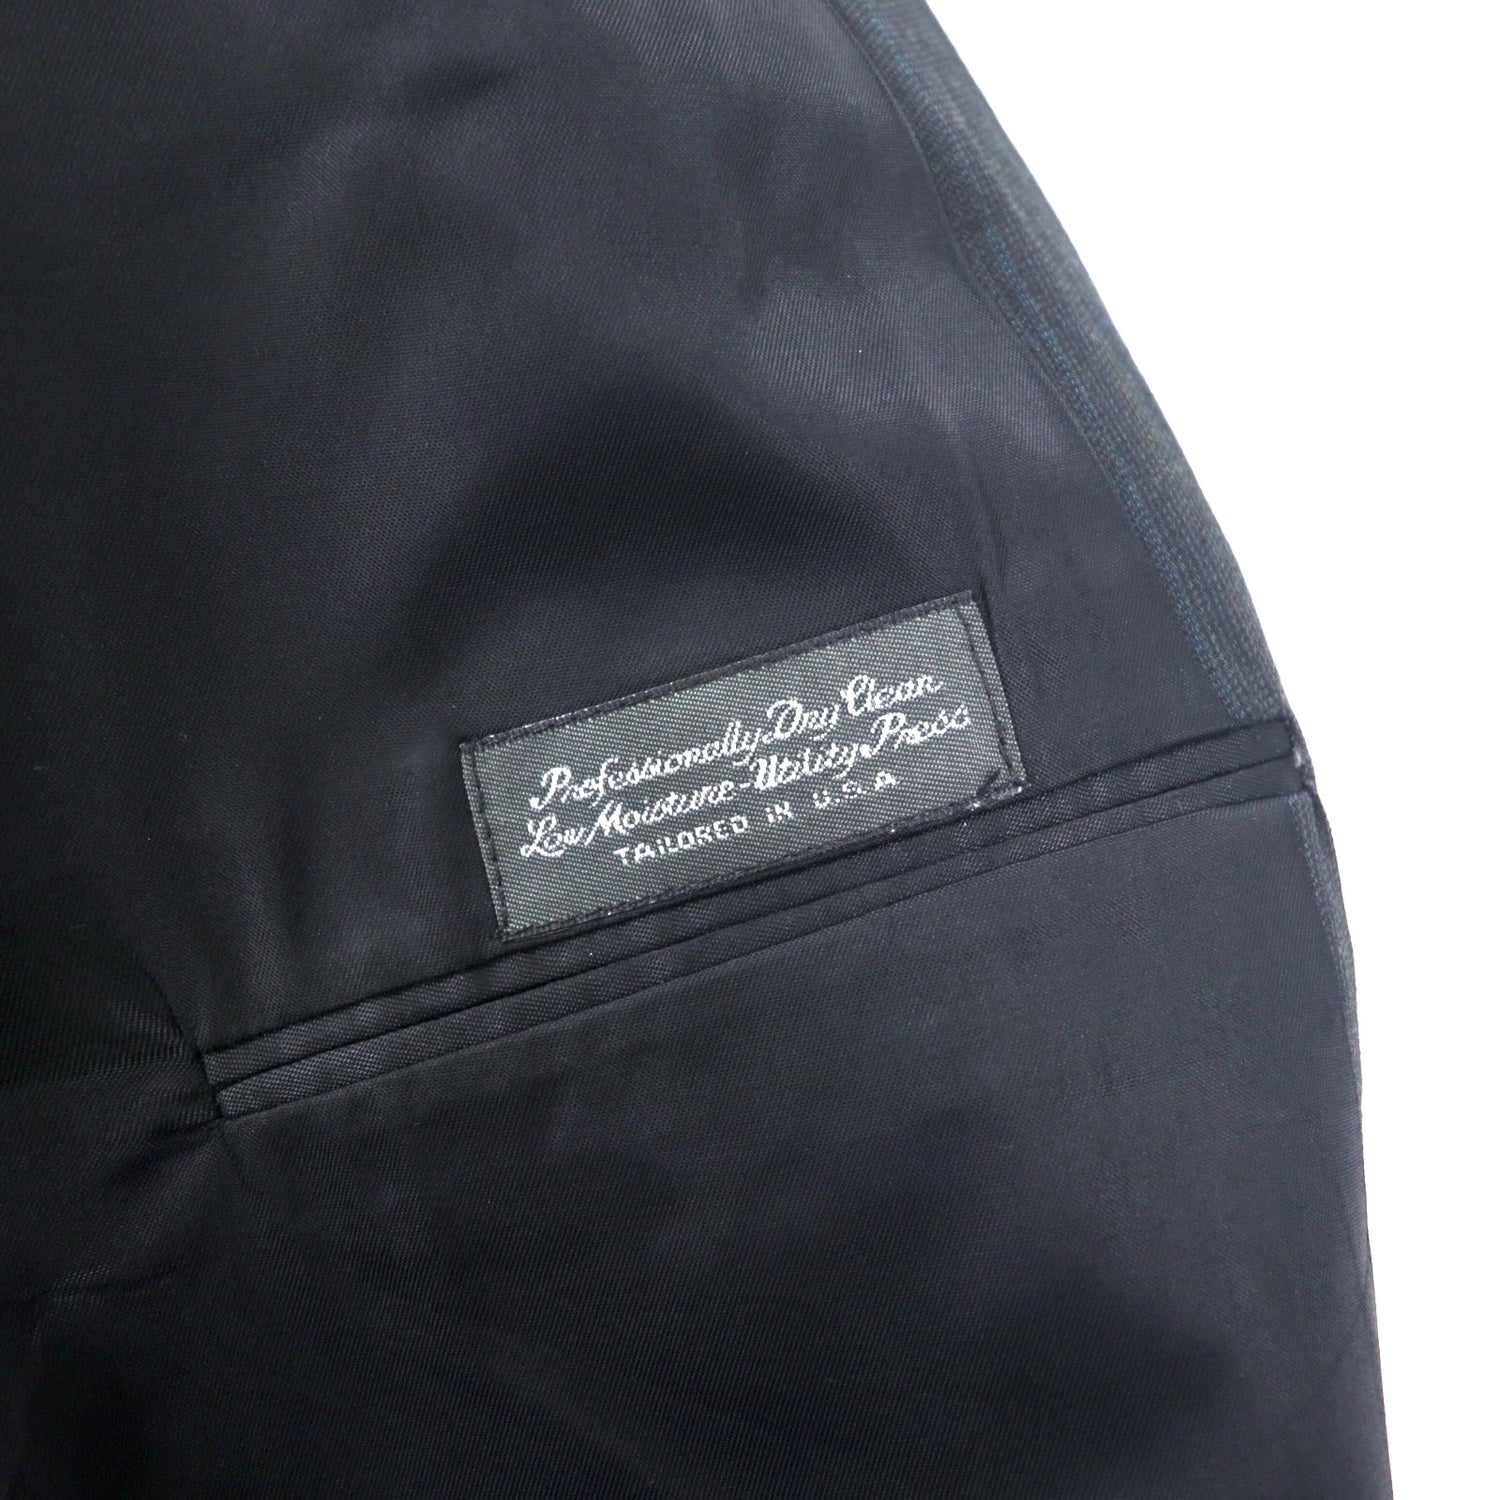 Christian Dior MONSIEUR USA製 ダブル テーラードジャケット XL グレー ストライプ ウール オールド UNIO